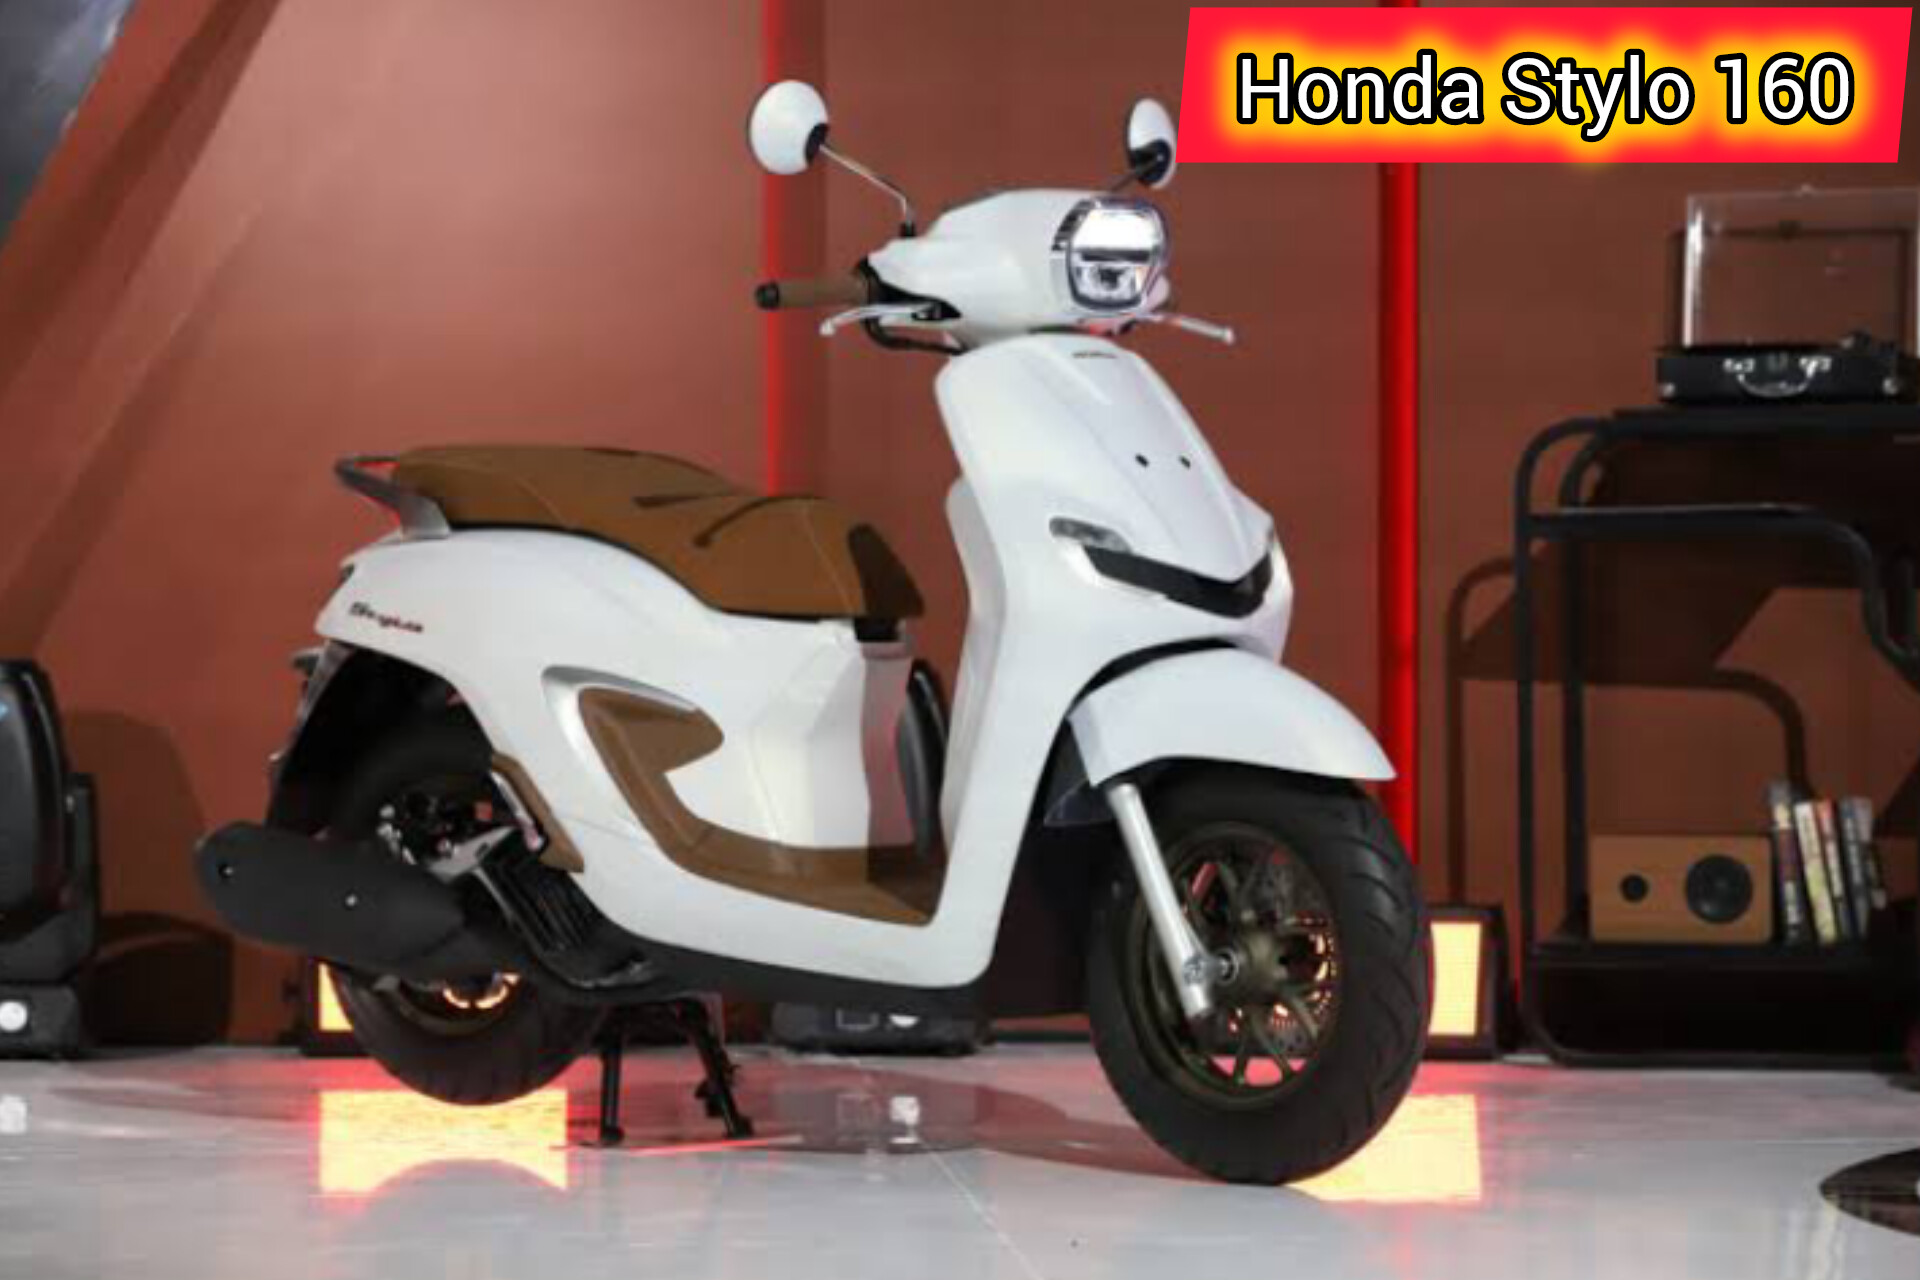 Skutik Premium Honda Stylo 160: dengan Kualitas Unggul dan Nuansa Modern Klasik, Intip Bocoran Spek dan Harga